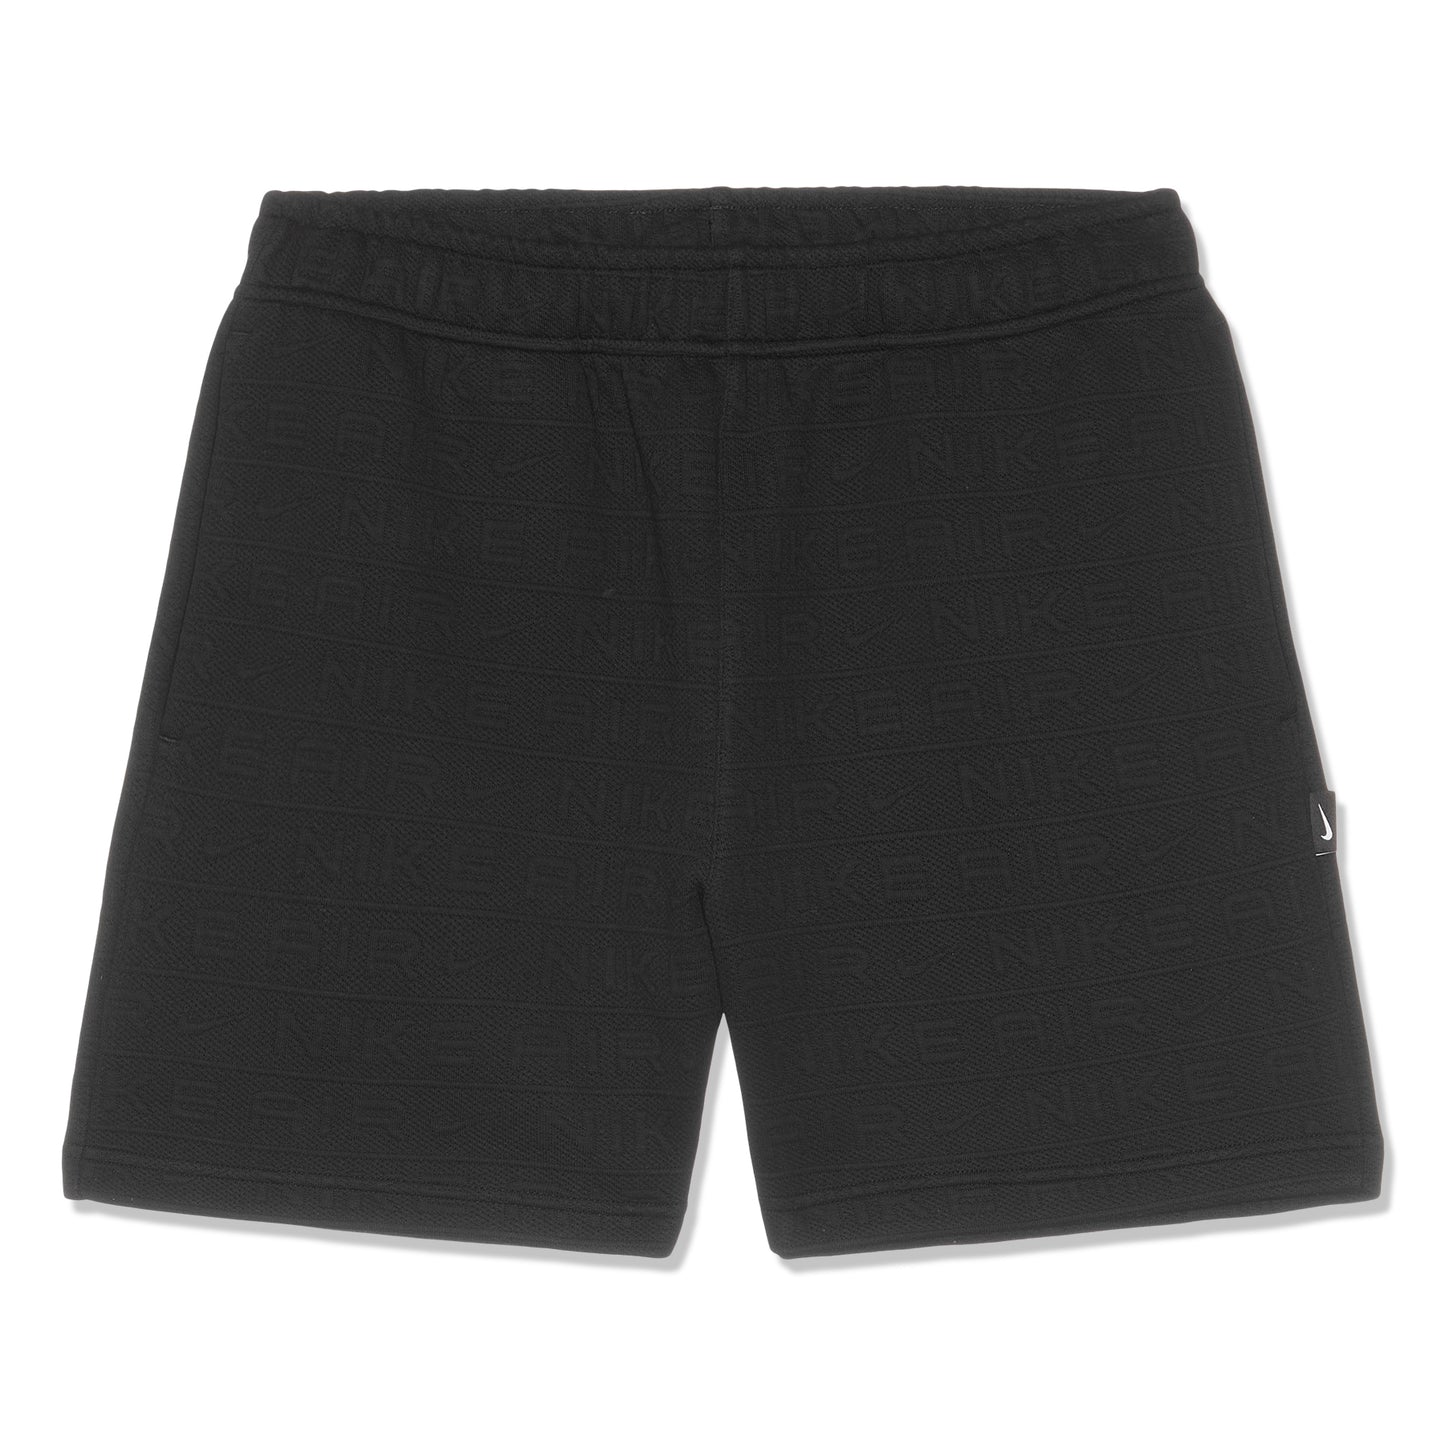 Nike Lifestyle Shorts (Black)